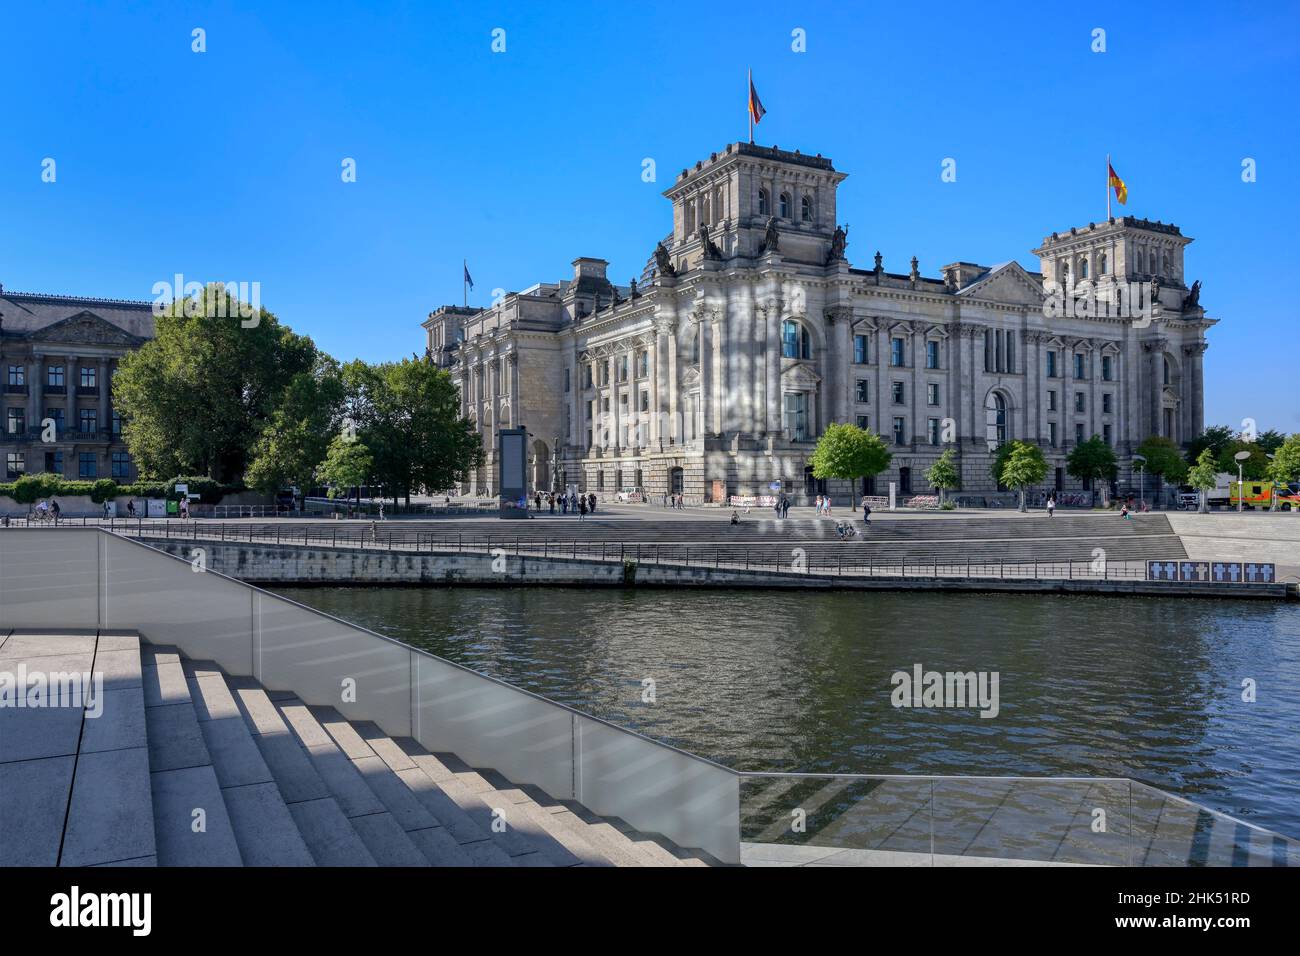 Reichstag bâtiment abritant le Bundestag, le long de la rivière Spree, quartier du Gouvernement, Tiergarten, Berlin, Allemagne,Europe Banque D'Images